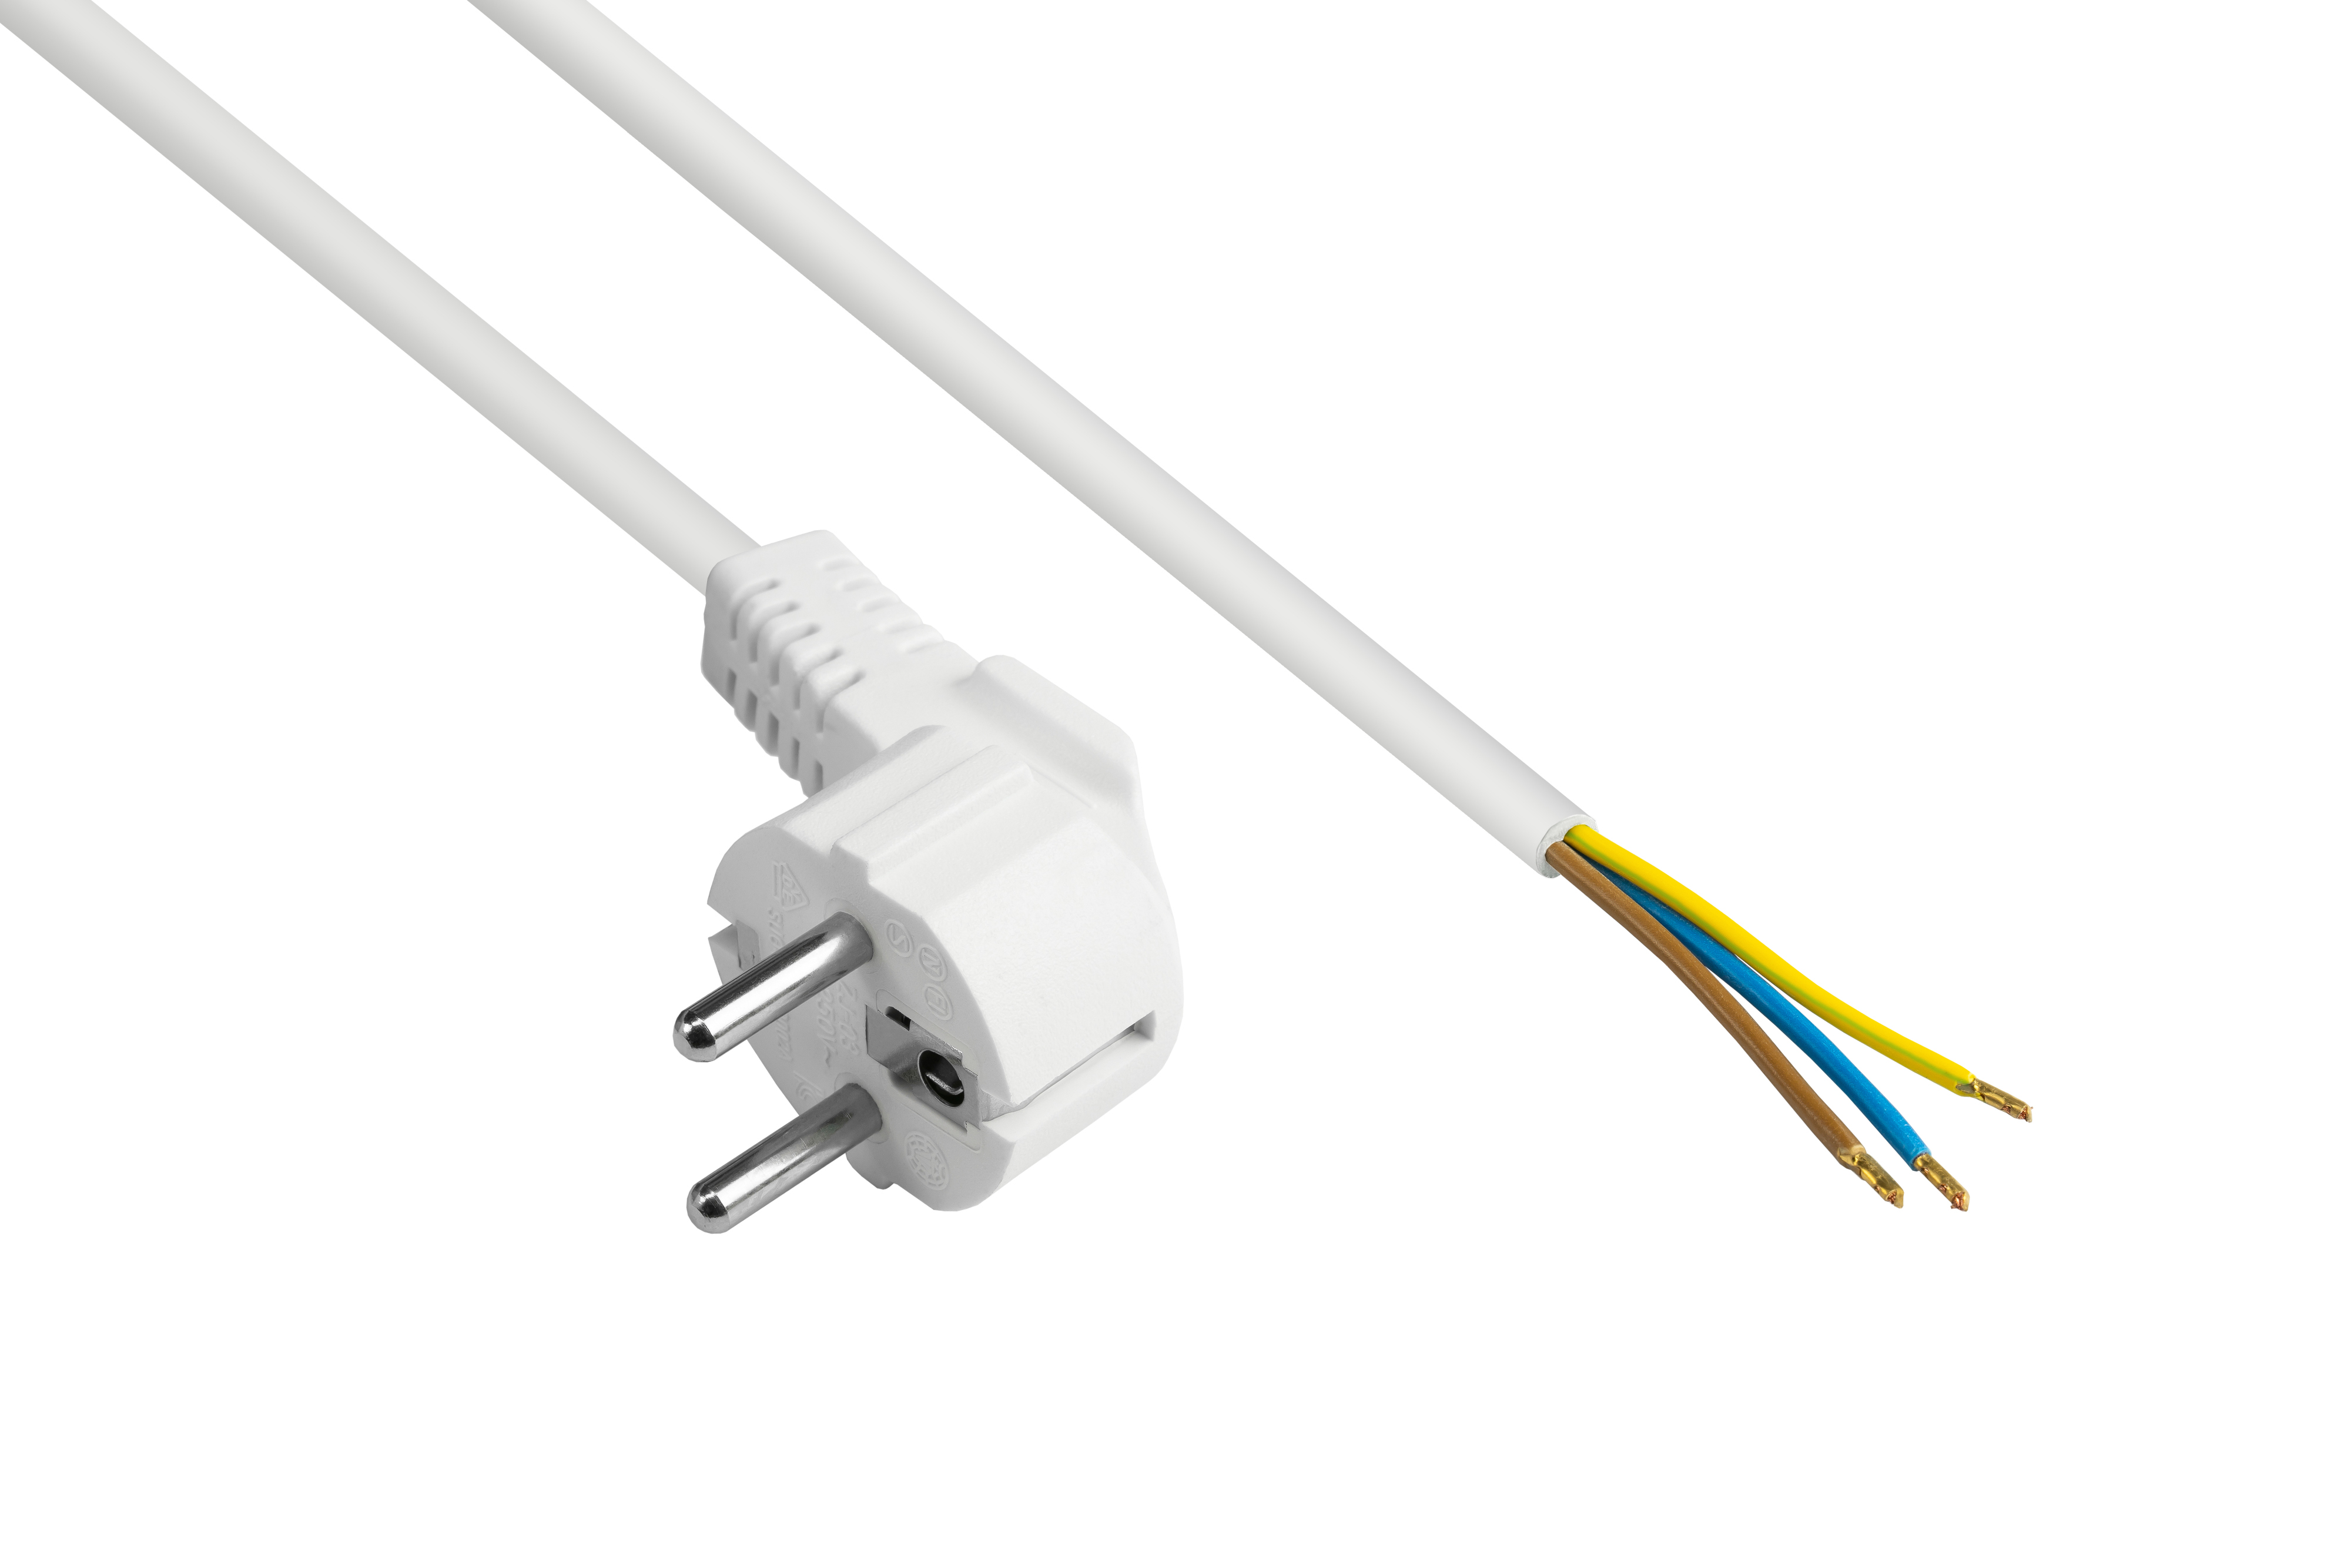 mm² E+F abisolierte Typ Schutzkontakt-Stecker Enden, weiß, an Stromkabel, (CEE 0,75 gewinkelt) weiß GOOD 7/7, CONNECTIONS